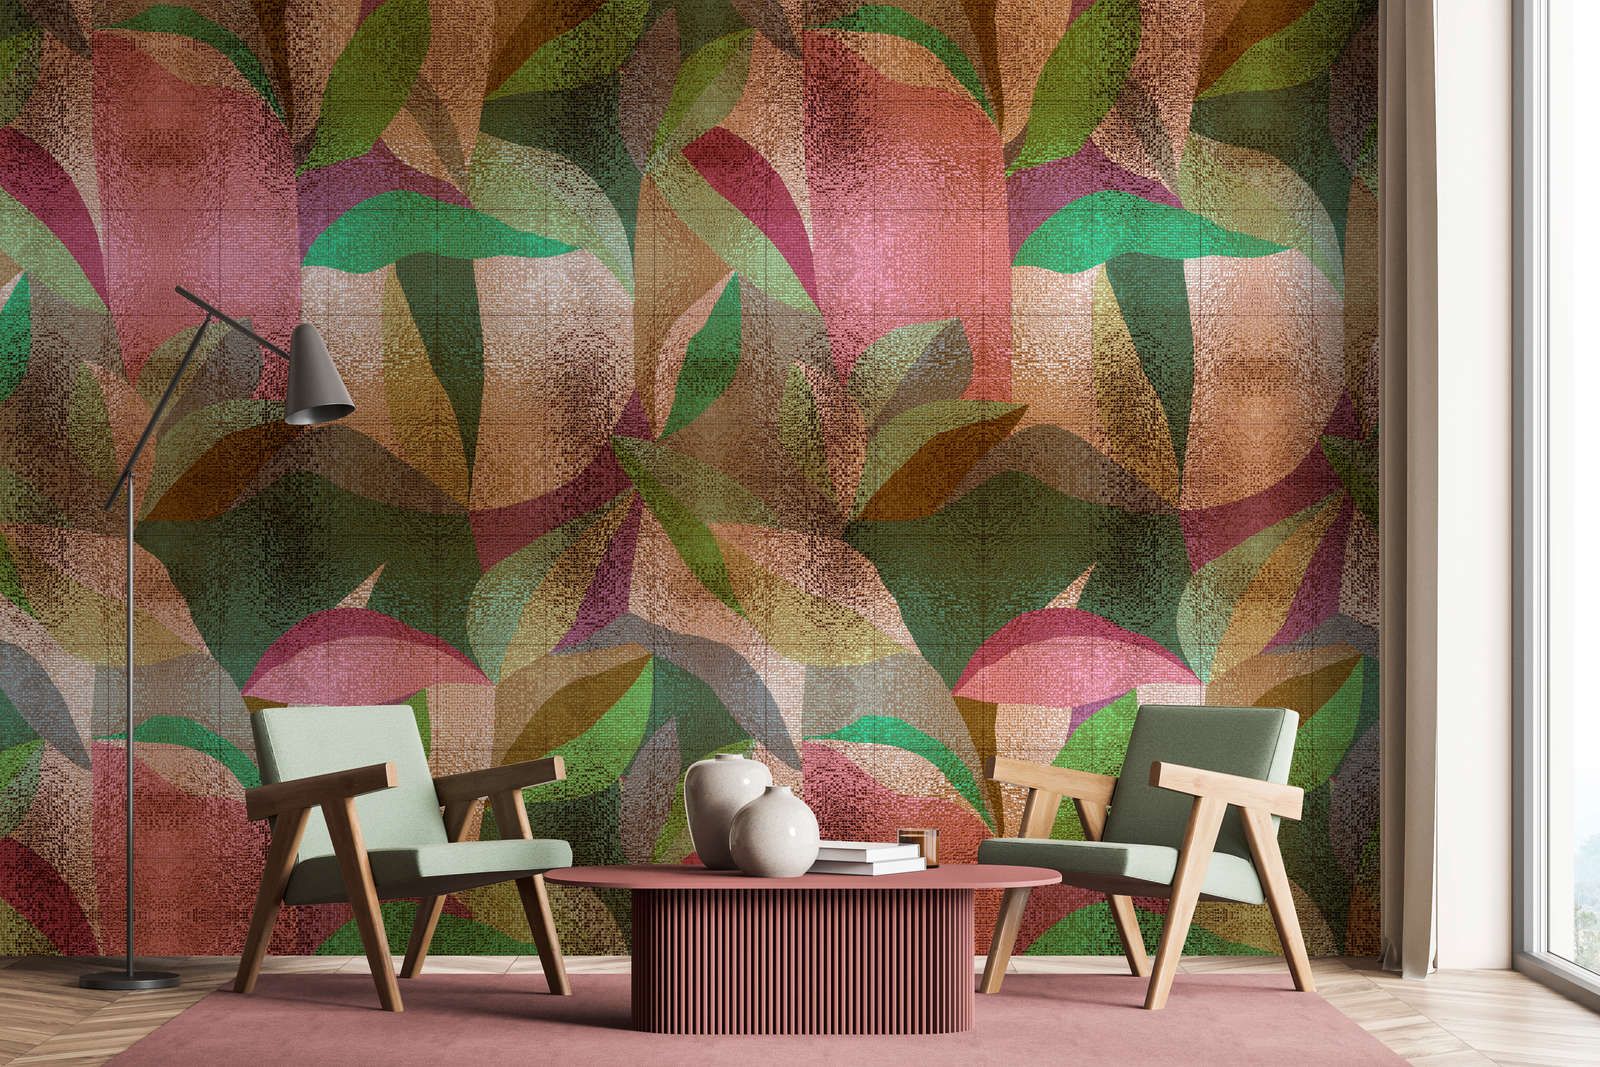             Fotomural »grandezza« - Diseño abstracto de hojas de colores con estructura de mosaico - Material no tejido de textura ligera
        